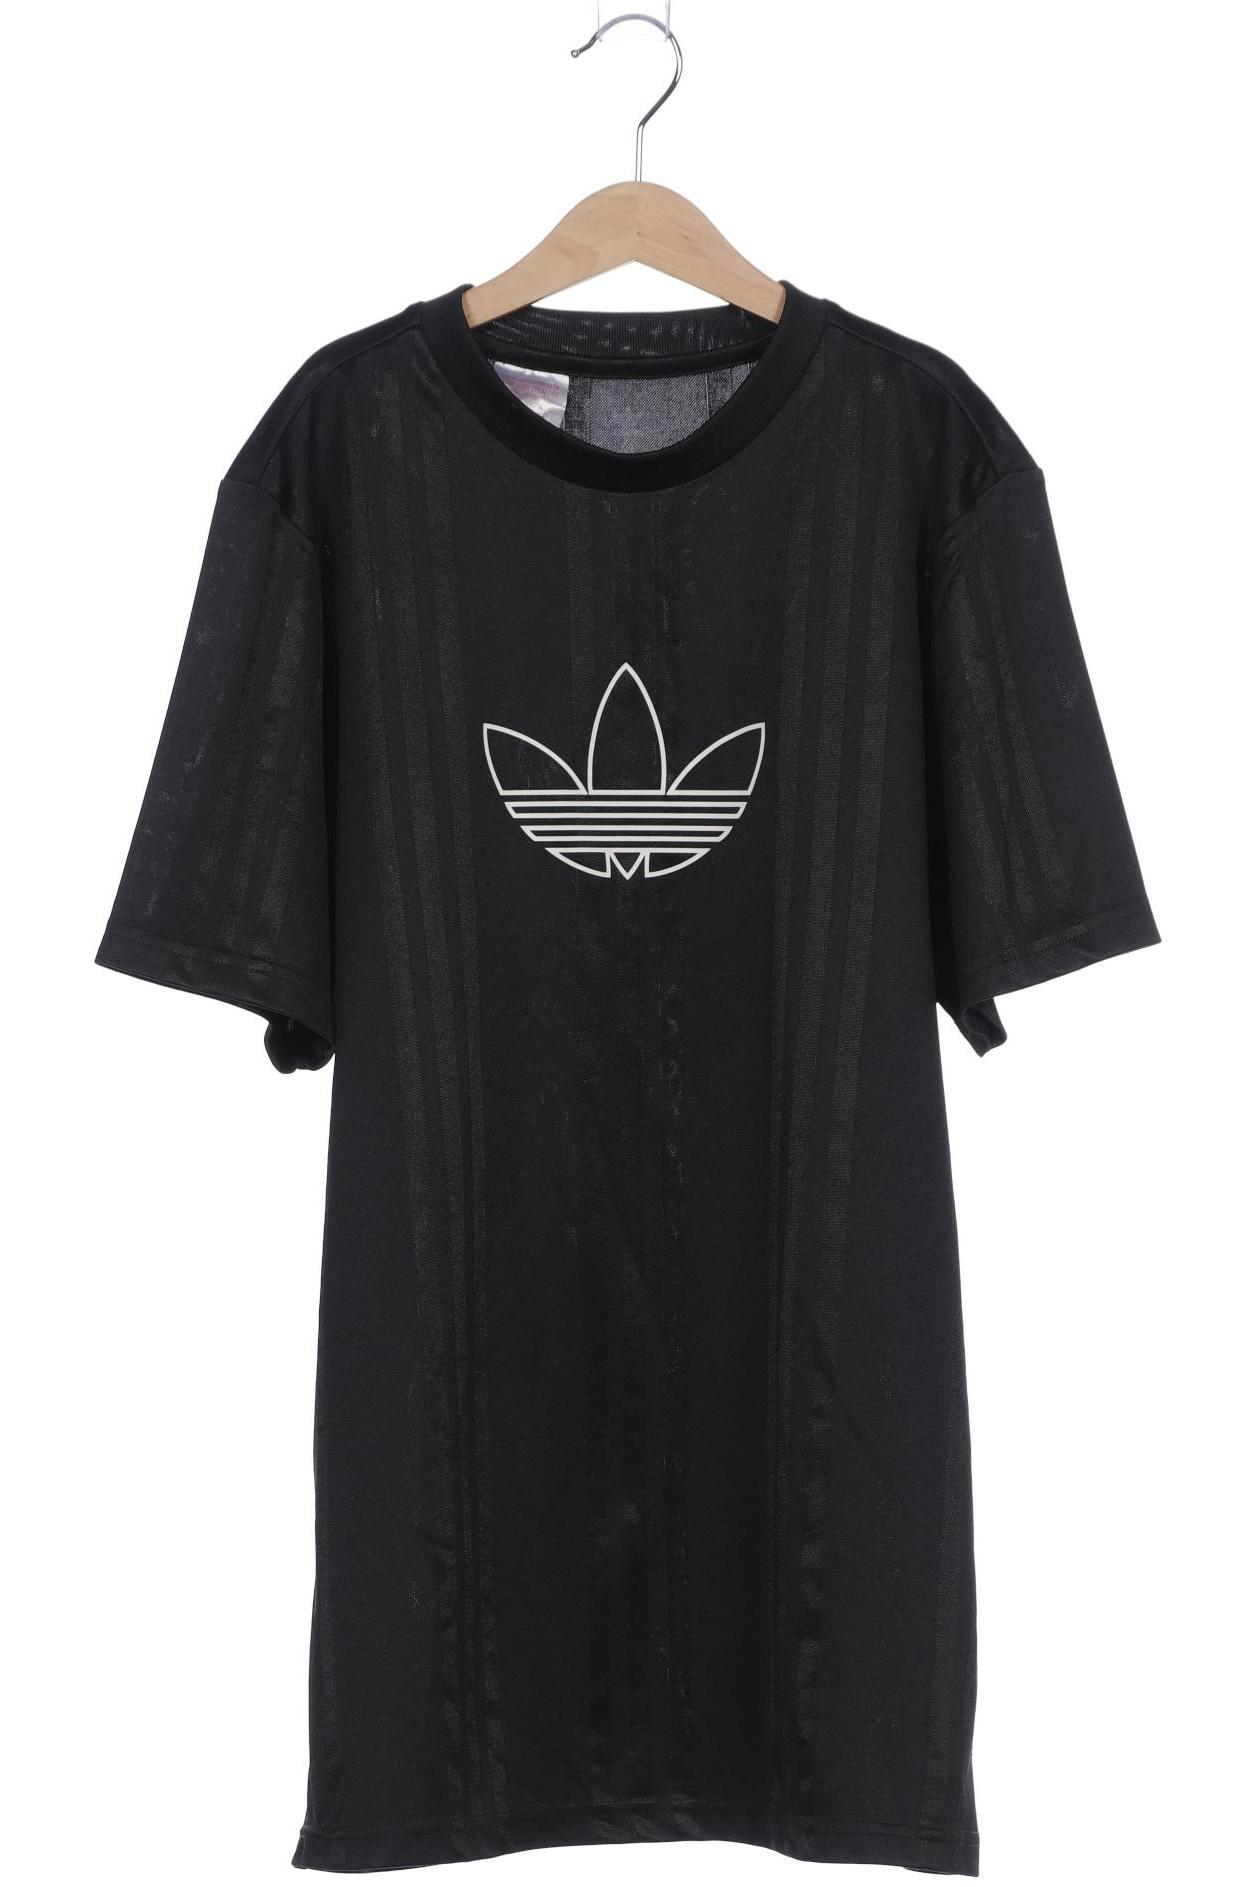 adidas Originals Jungen T-Shirt, schwarz von adidas Originals